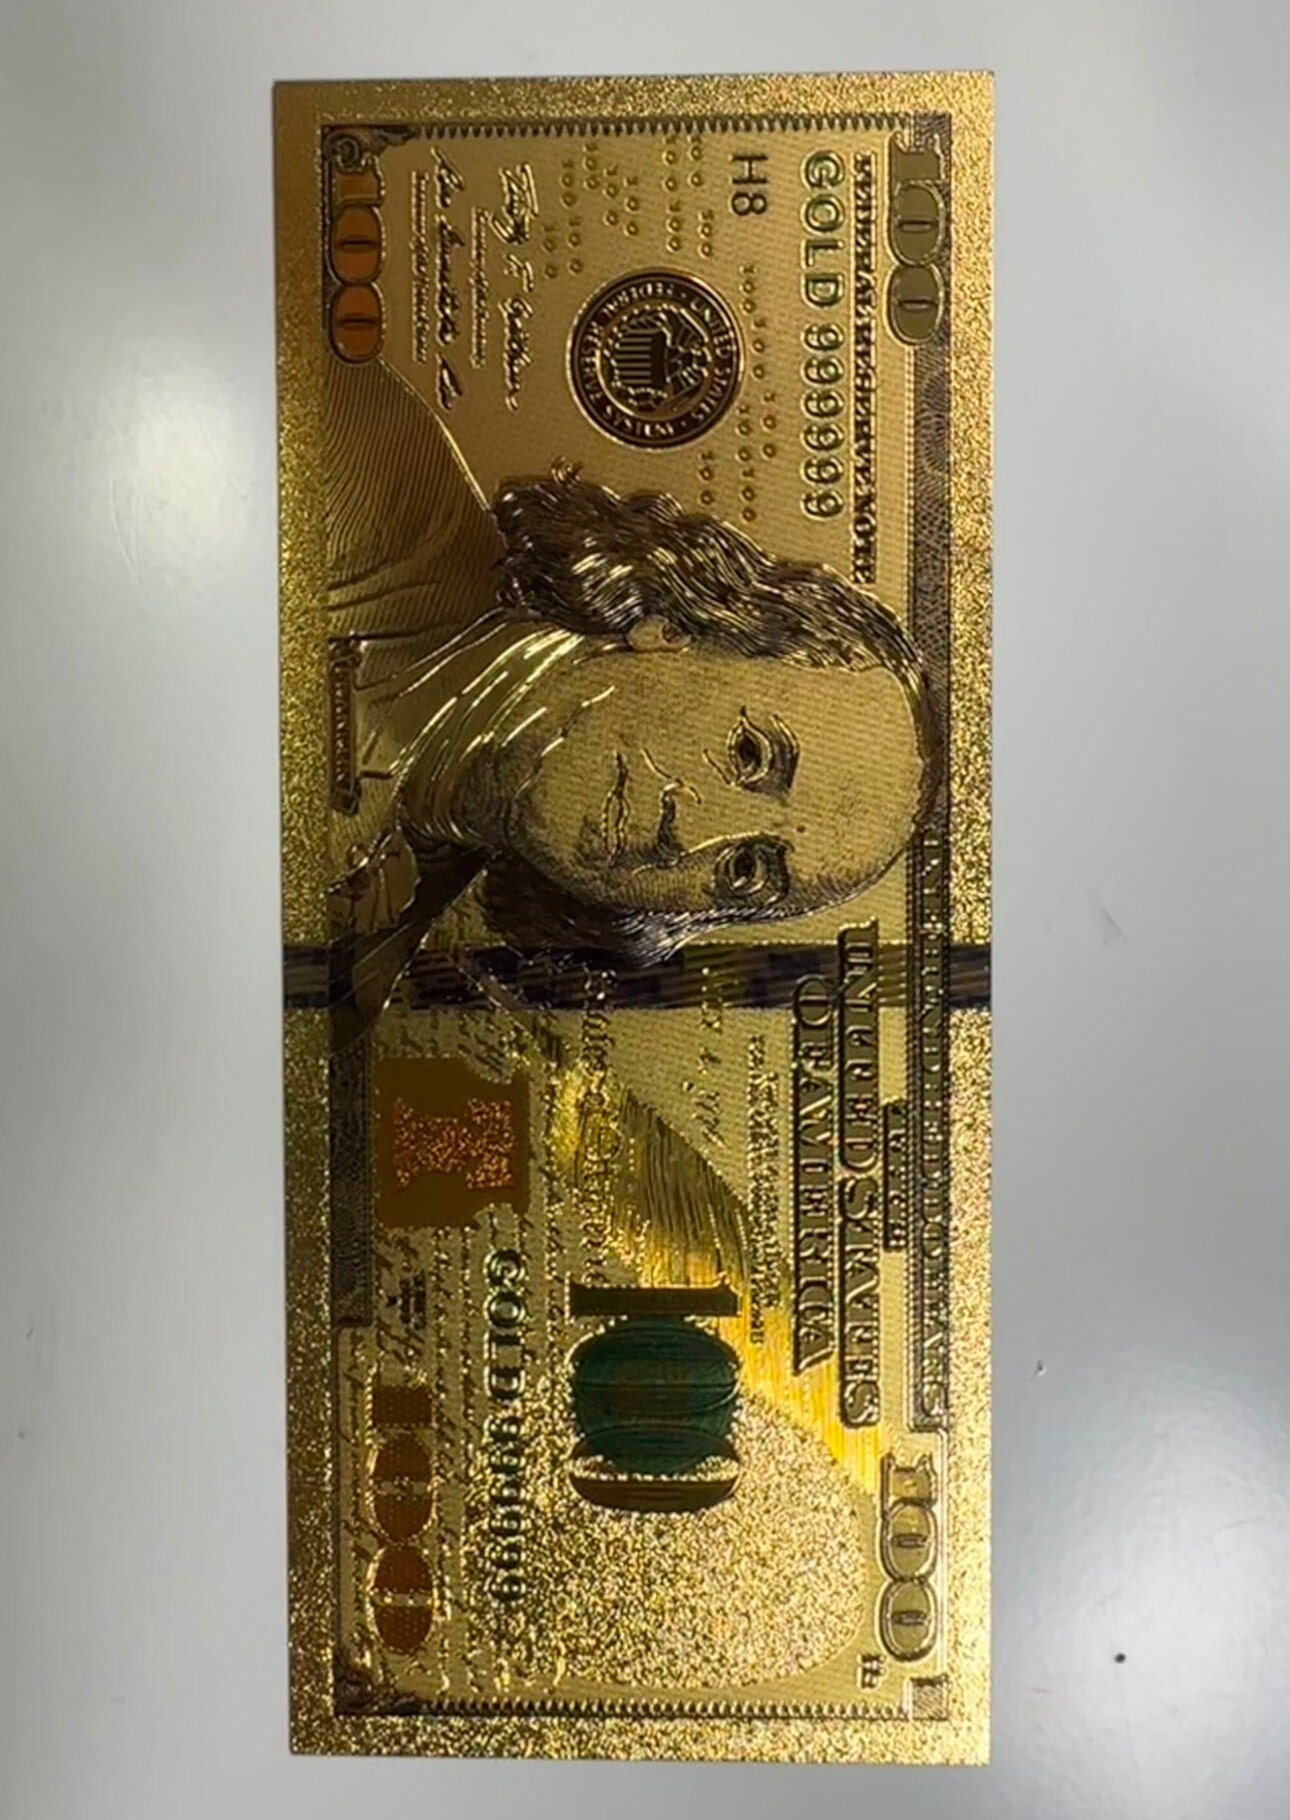 Bright Gold Plated Foil $100 Dollar Bill Sharp Bill! FREE SHIPPING USA  Seller